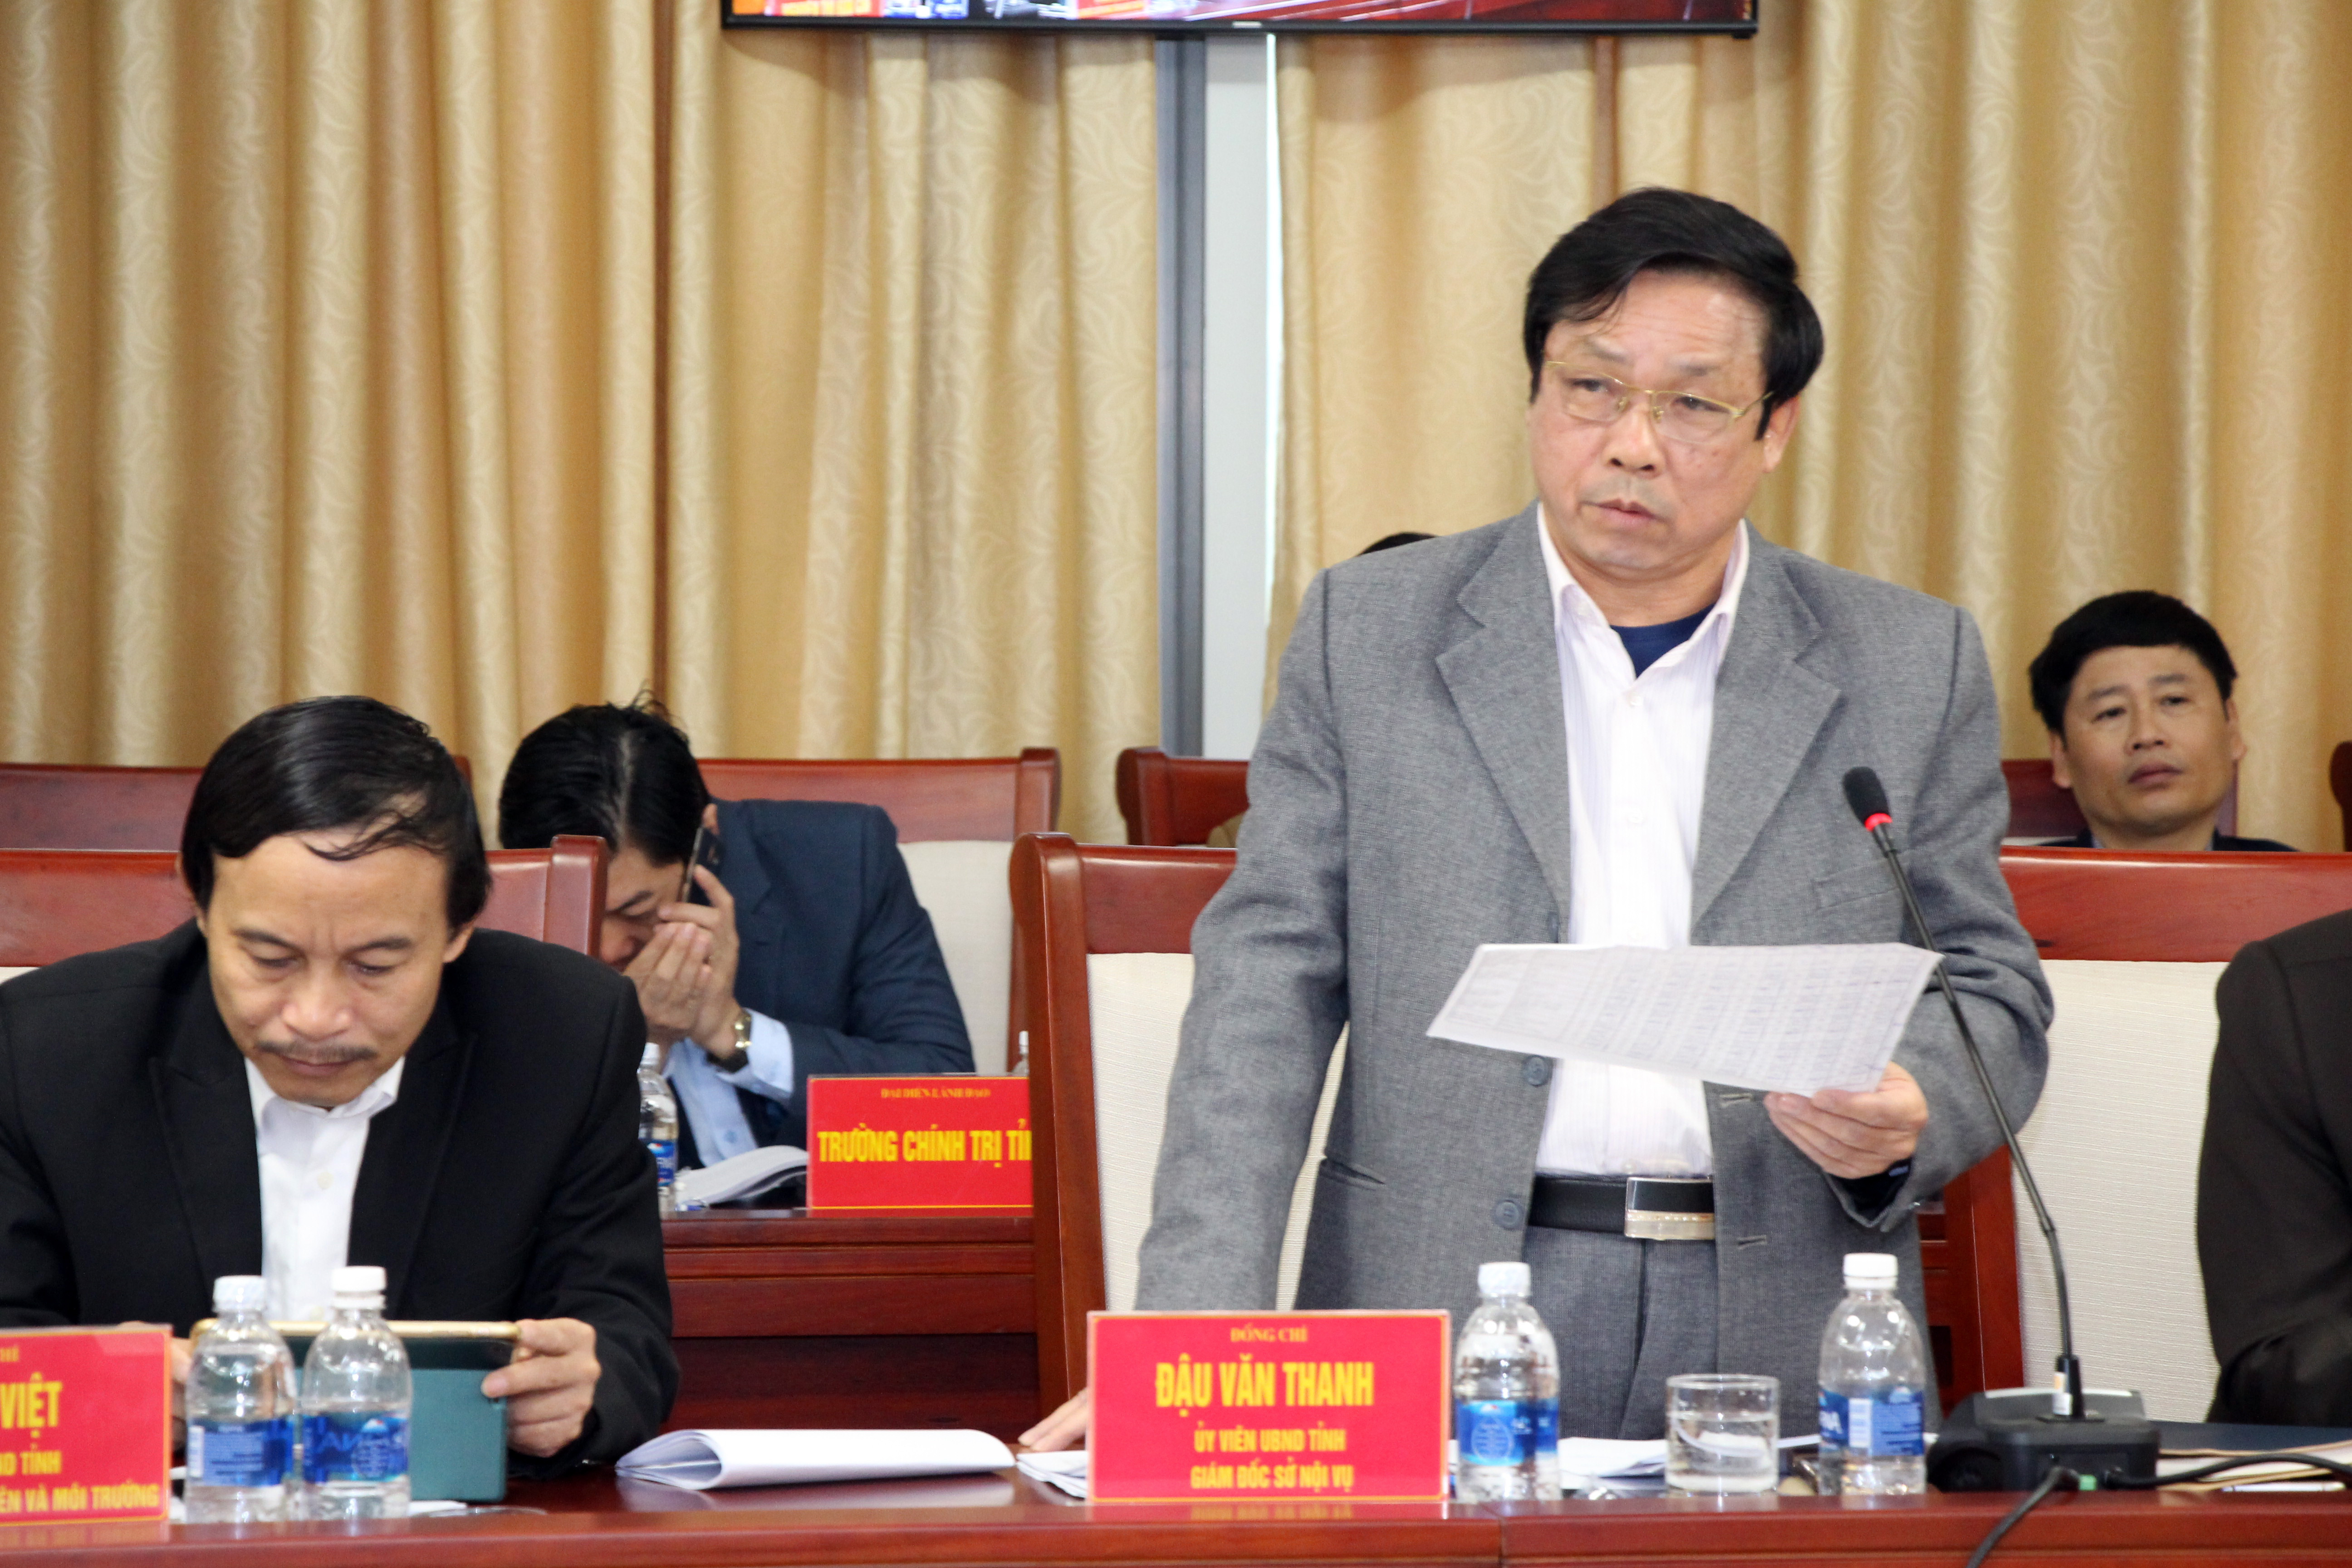 Đồng chí Đậu Văn Thanh - Giám đốc Sở Nội vụ tỉnh phát biểu tại hội nghị. Ảnh: Đào Tuấn